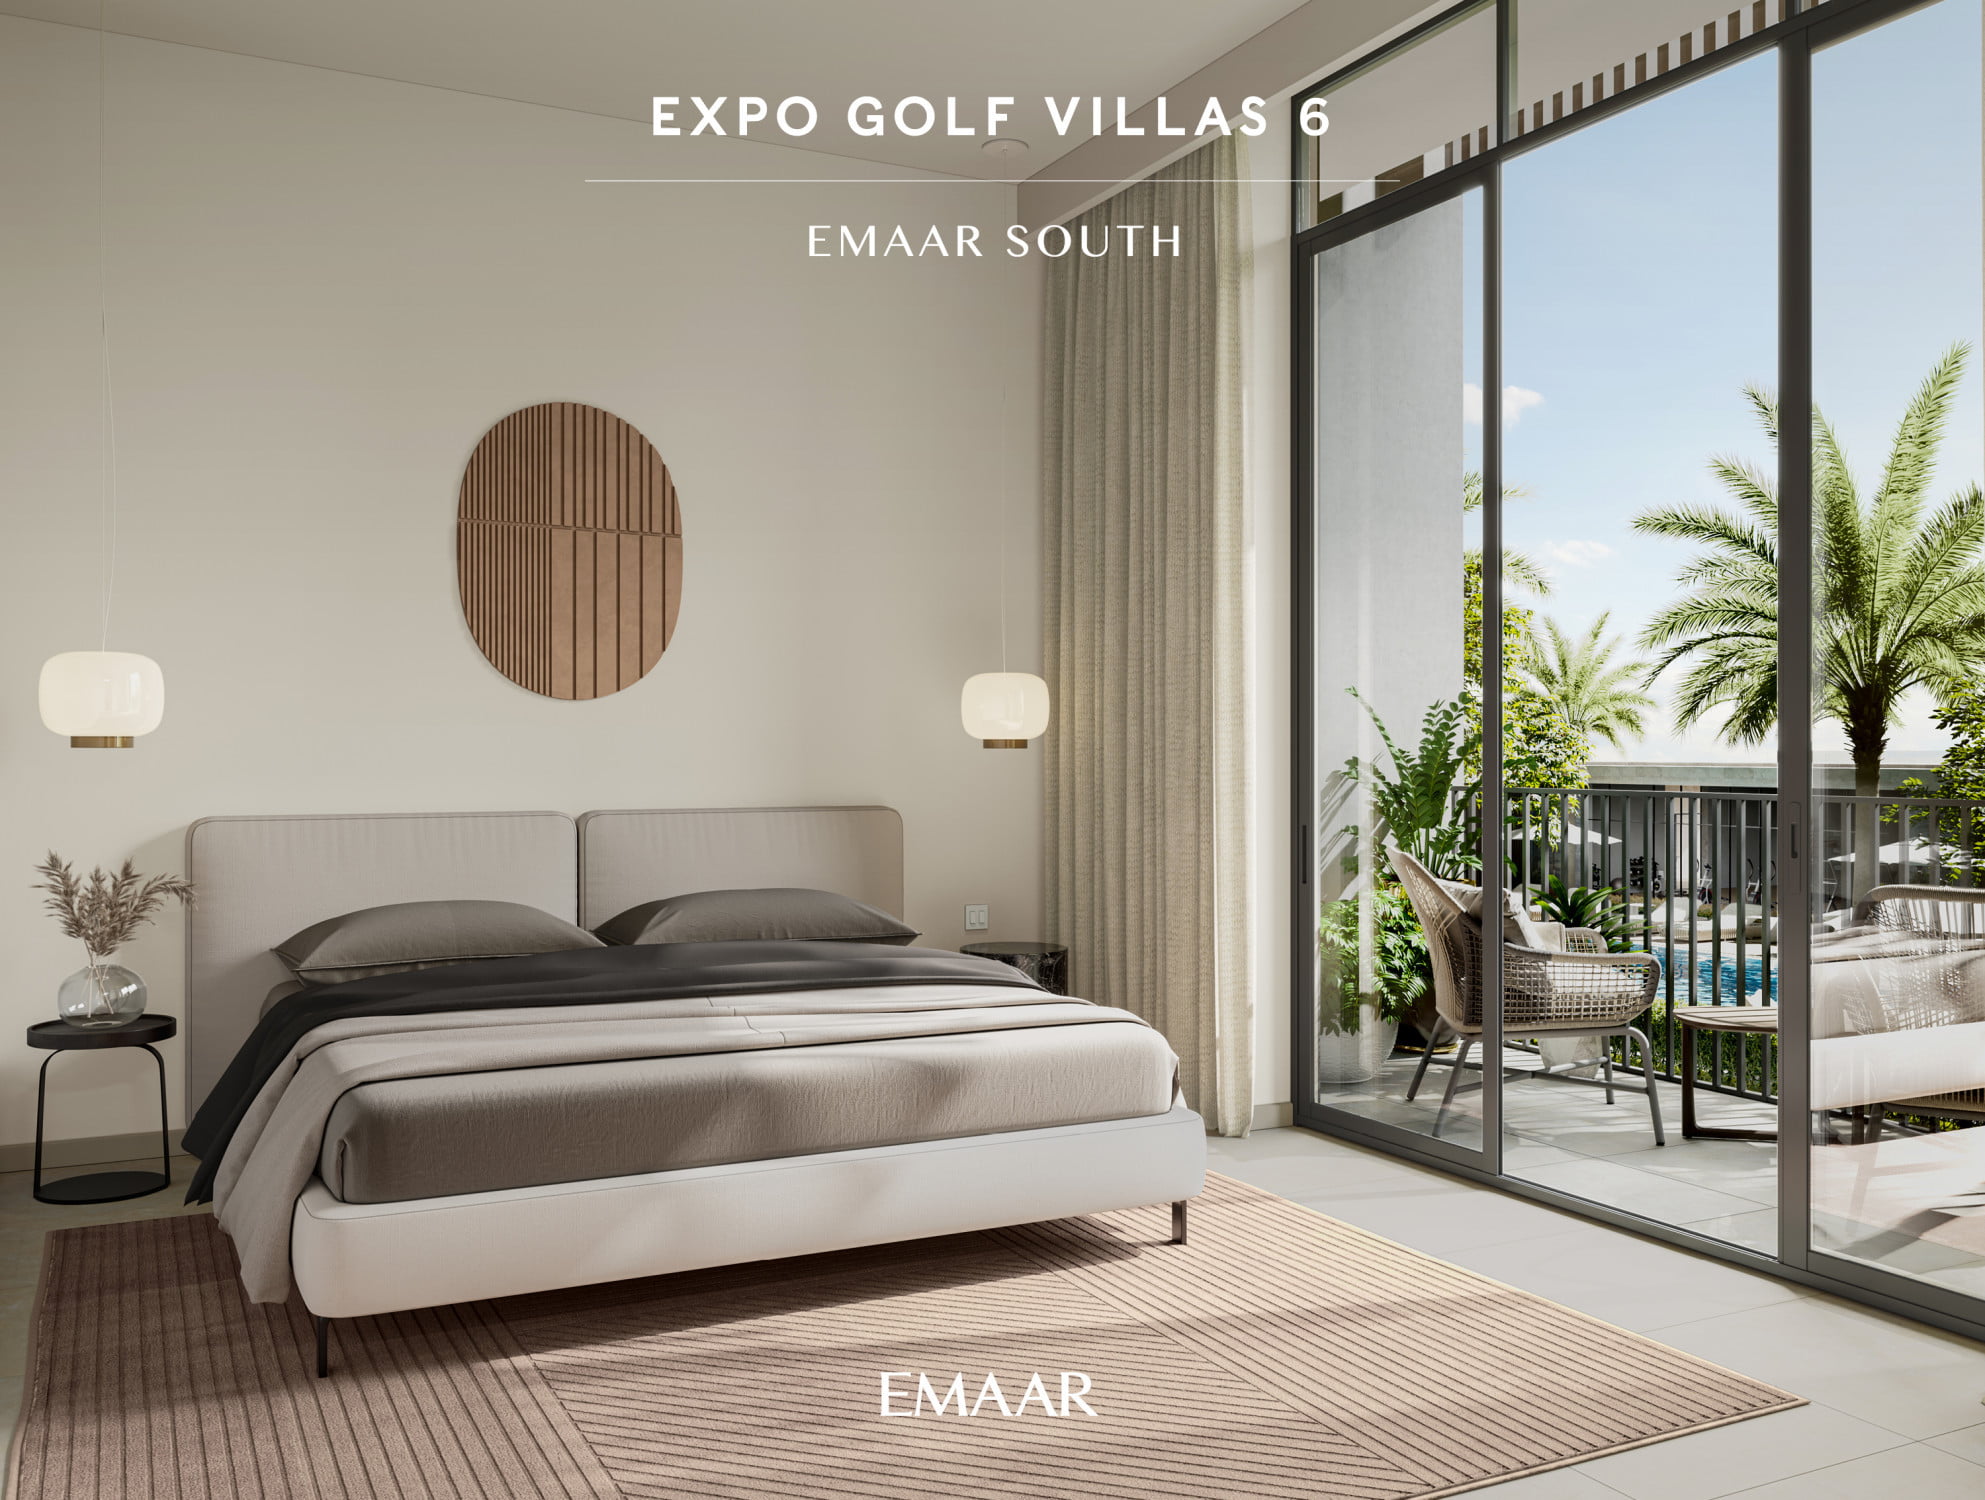 EXPO GOLF VILLAS chambre 2 - Immobilier Dubai